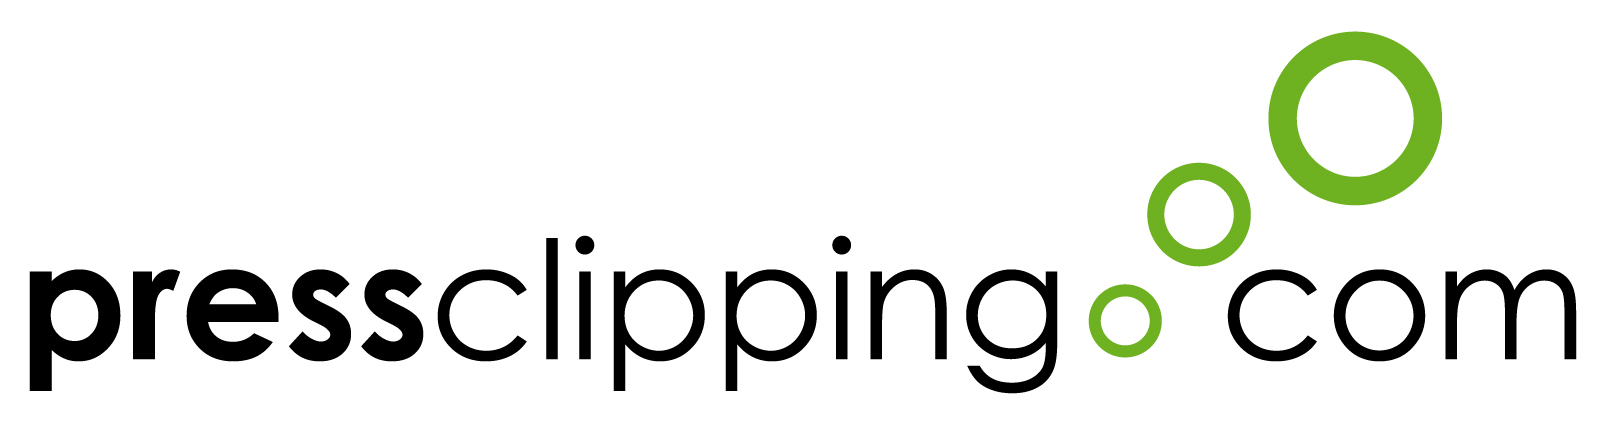 logo empresa de clipping Pressclipping